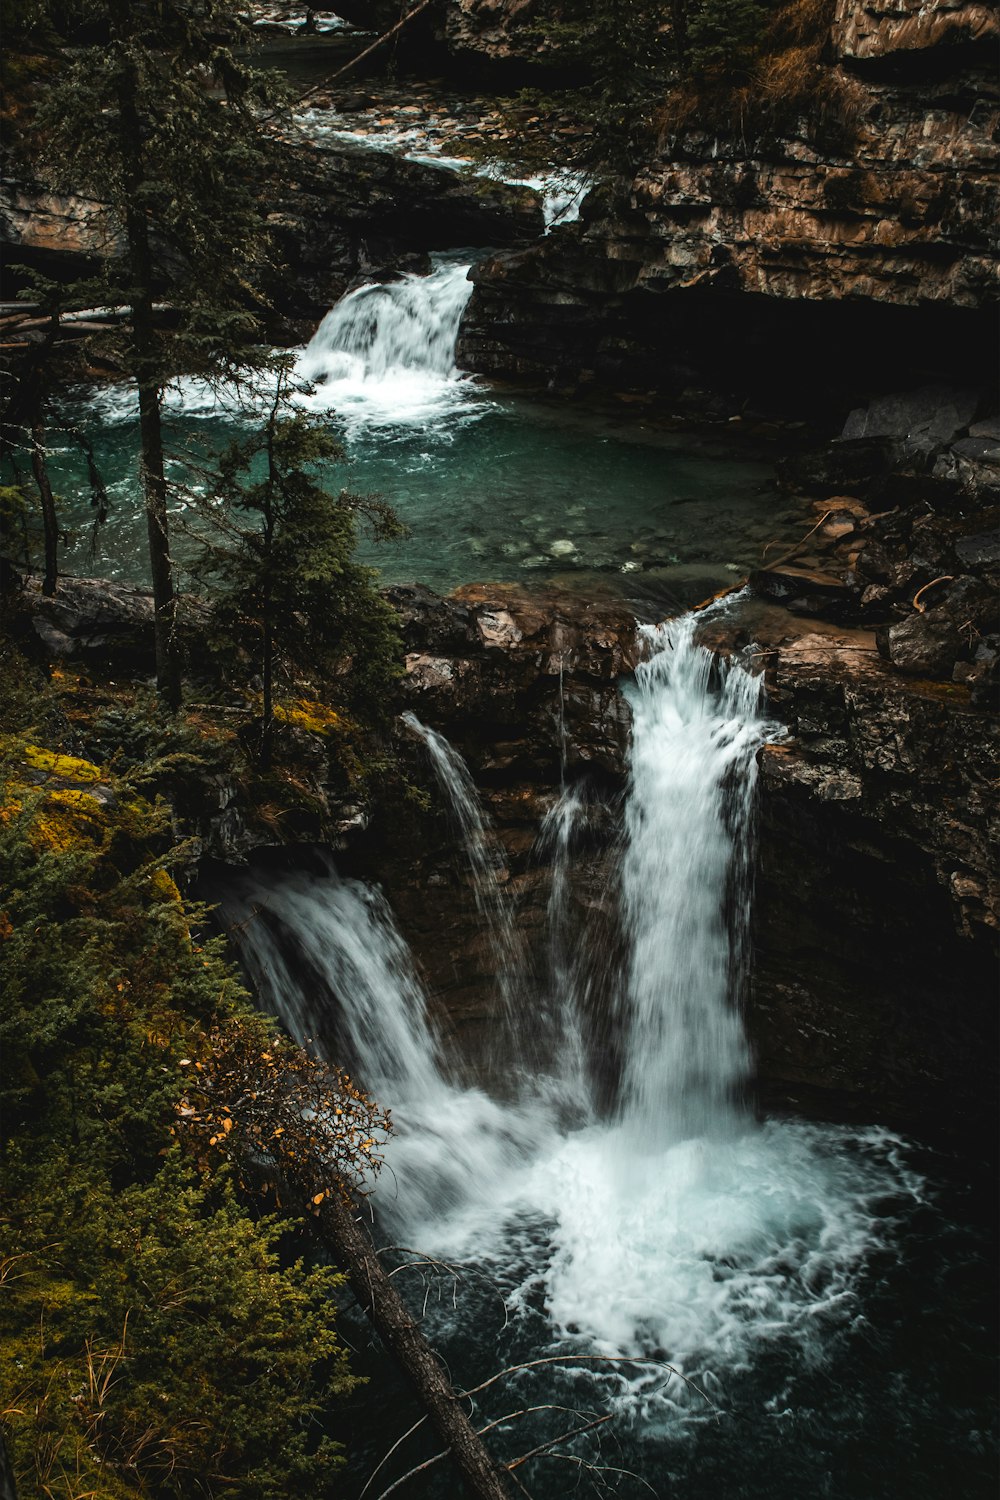 Une petite cascade dans une forêt avec beaucoup d’eau